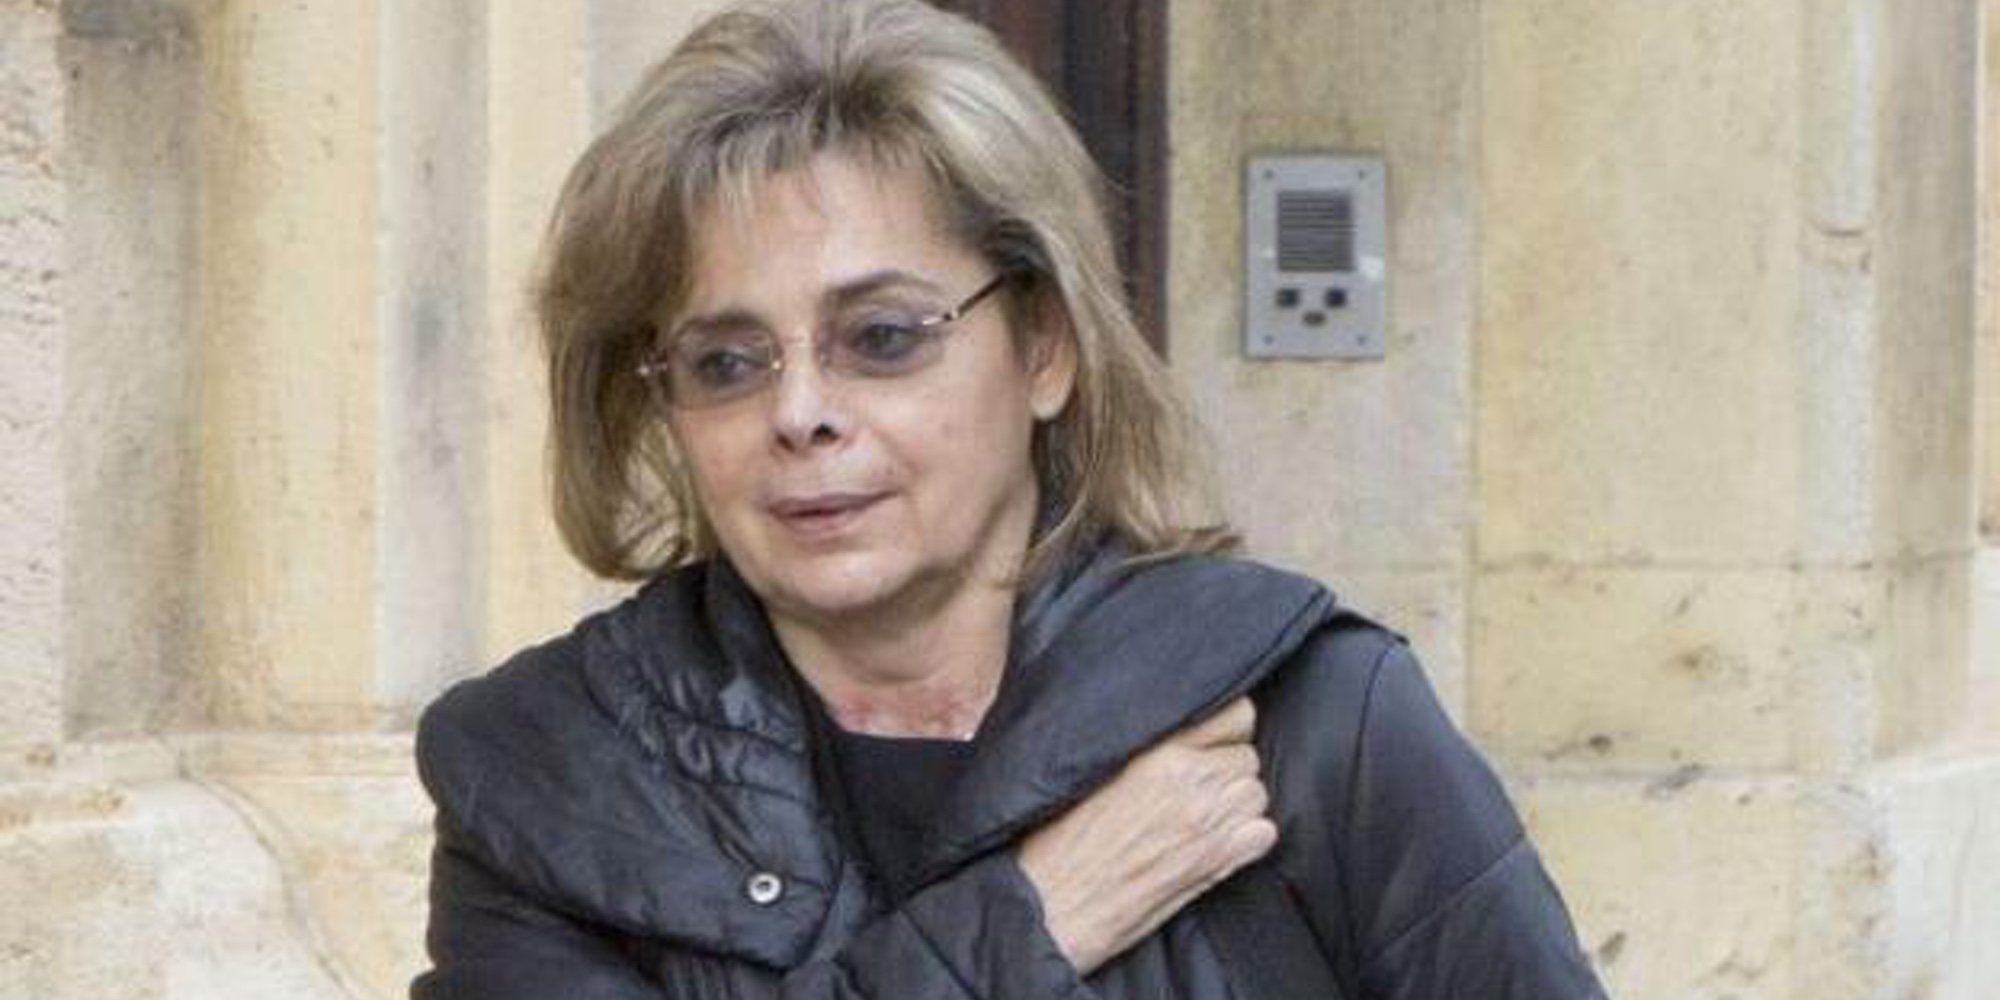 Aparece muerta María José Alcón, la exconcejala que desveló la corrupción del Partido Popular de Valencia